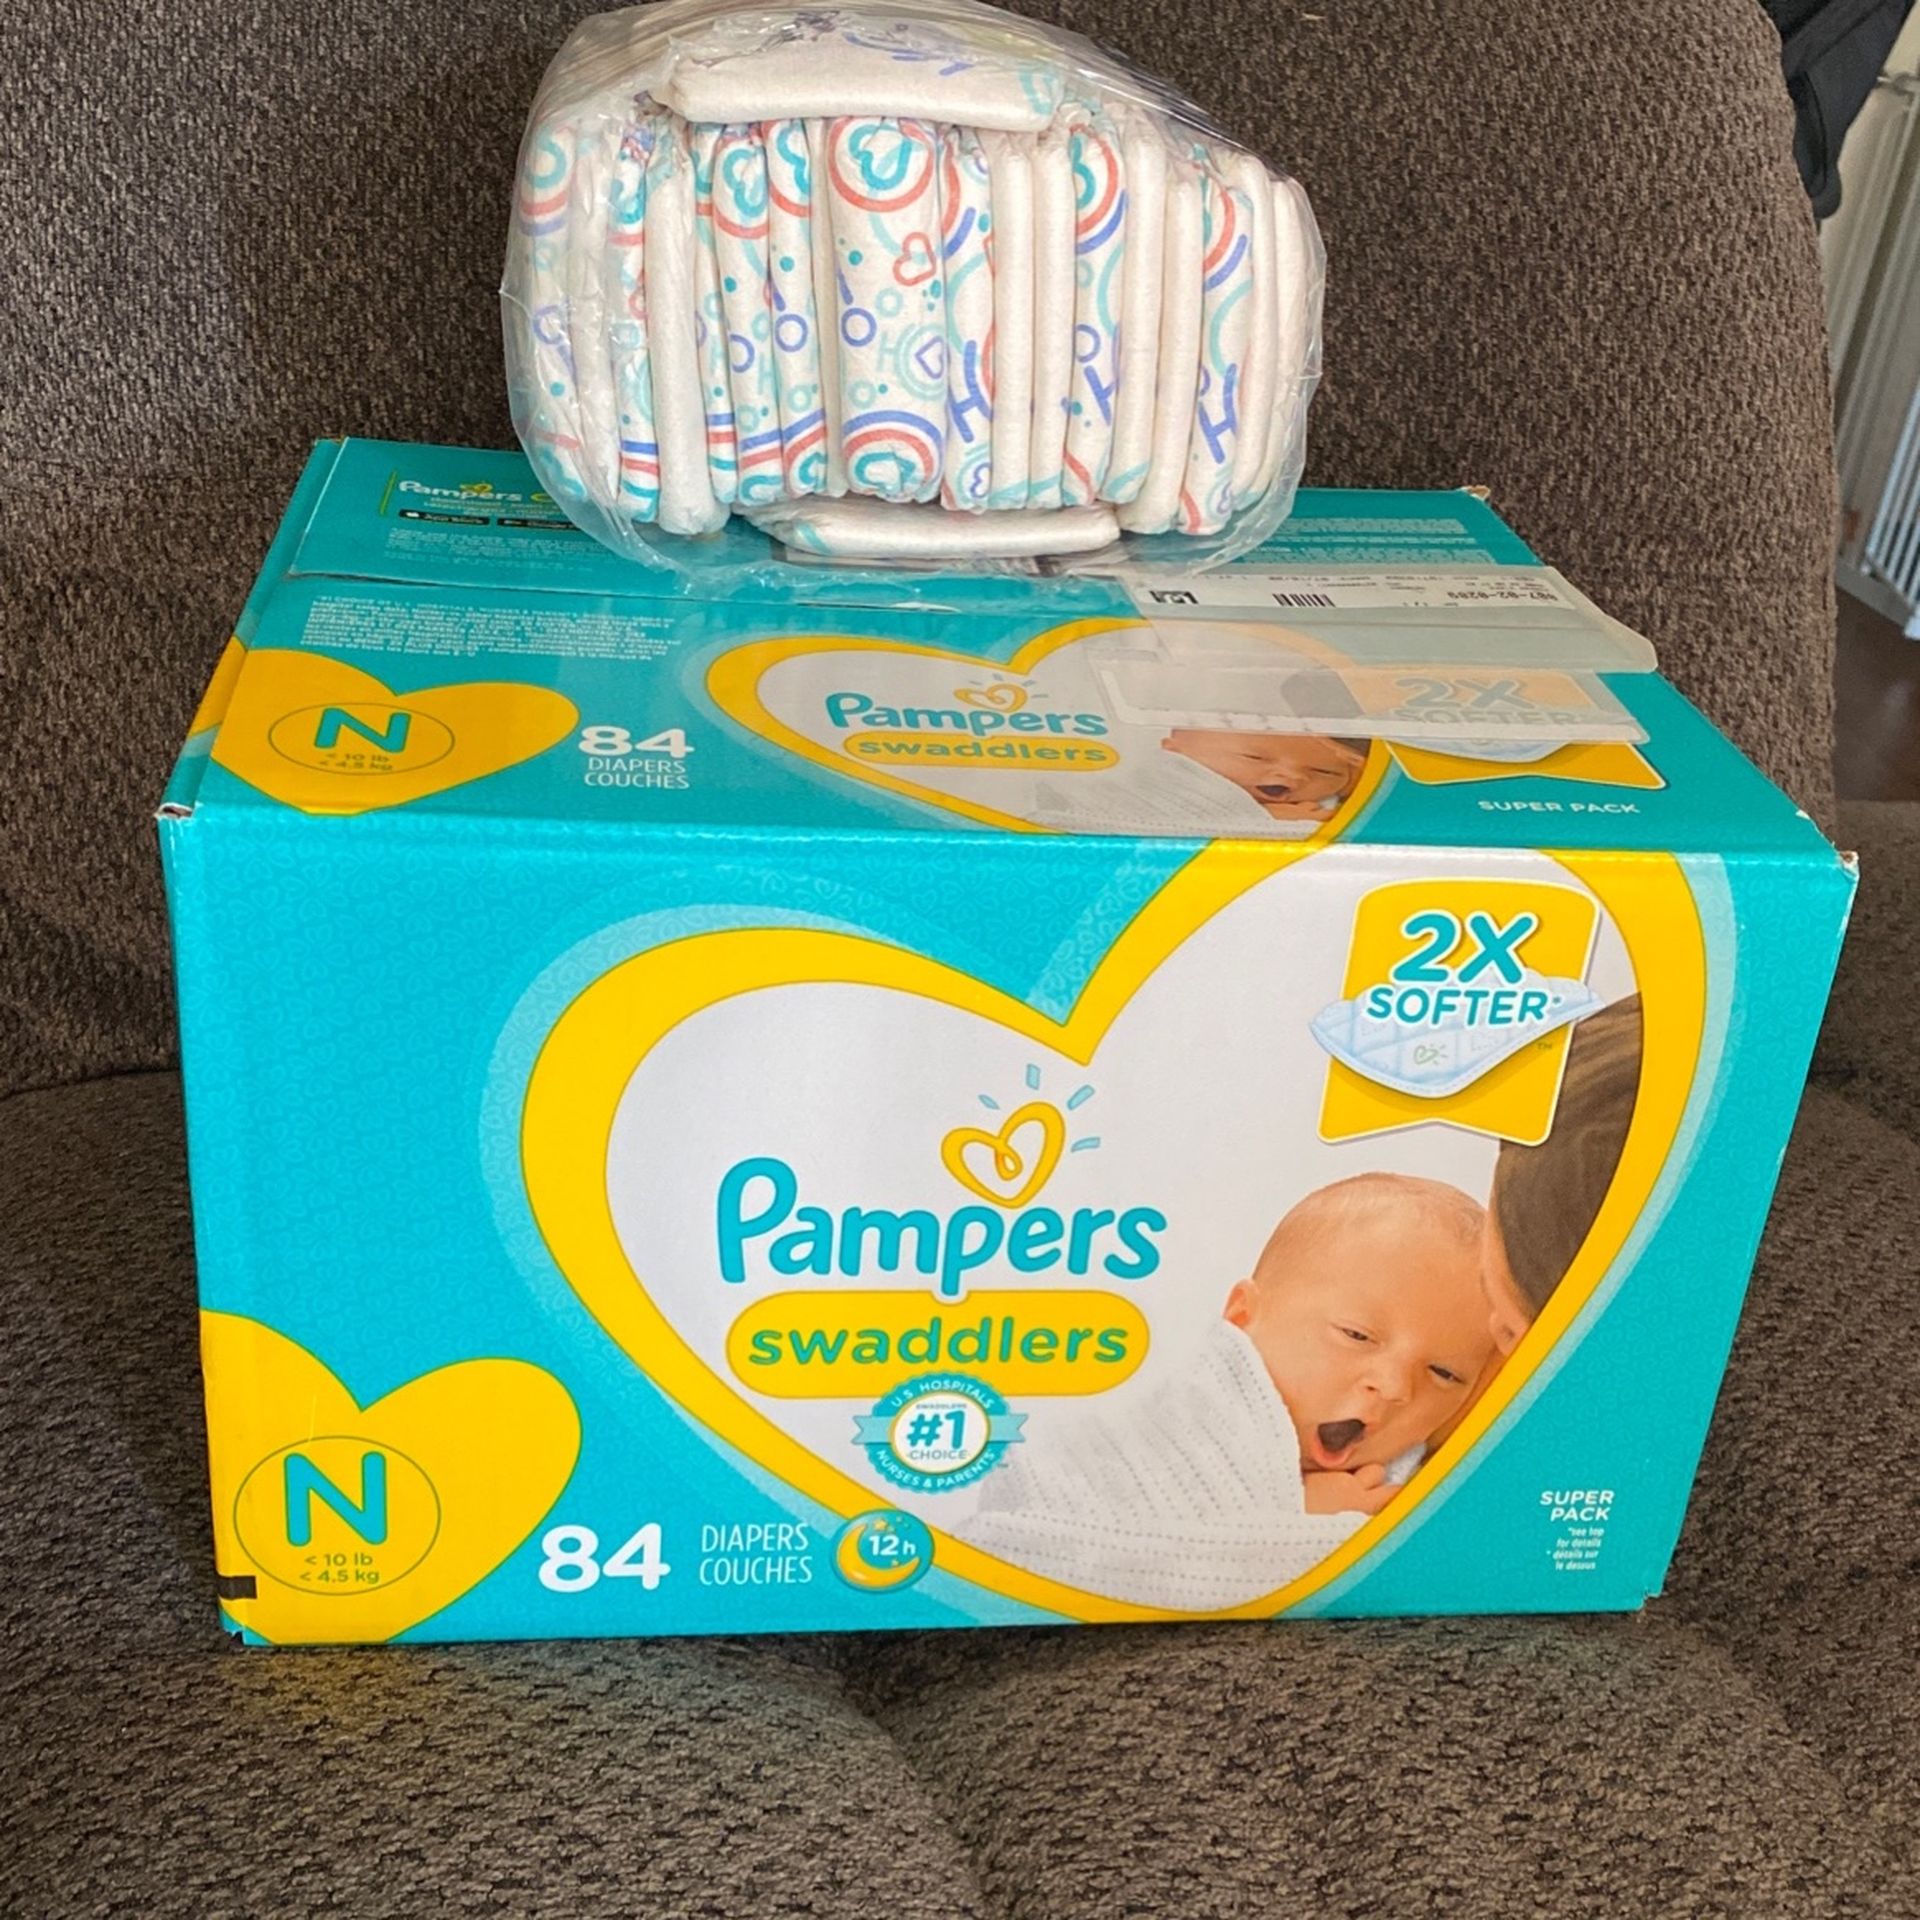 Unopened Box Of Newborn Pampers & Some Honest Newborn Diapers